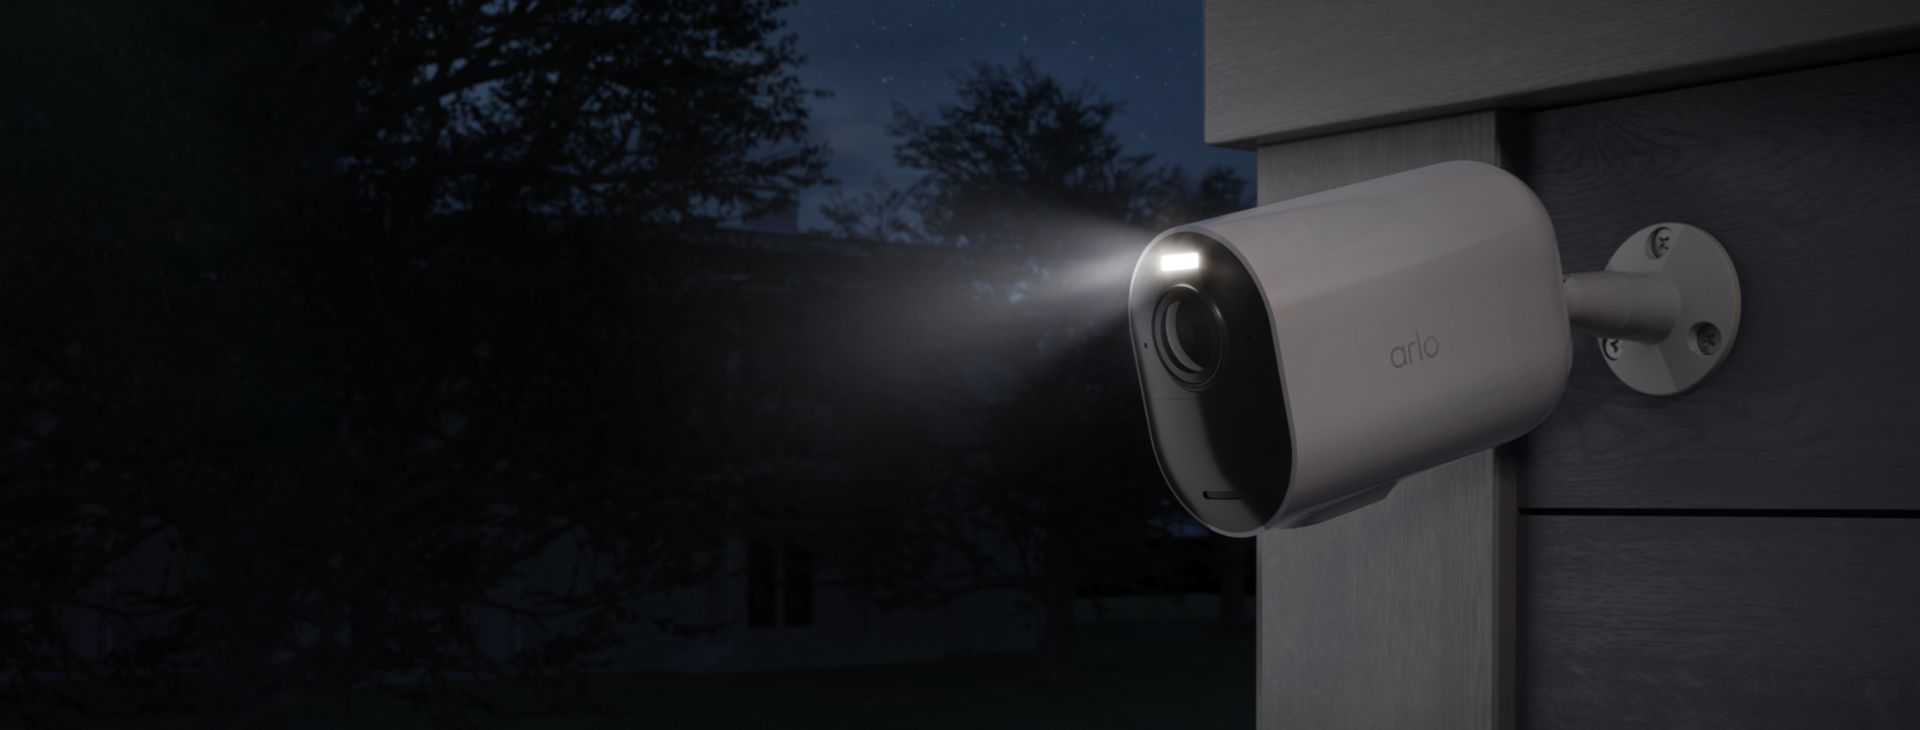 La telecamera di sorveglianza Arlo Ultra 2 XL installata contro una parete di notte con i riflettori accesi.